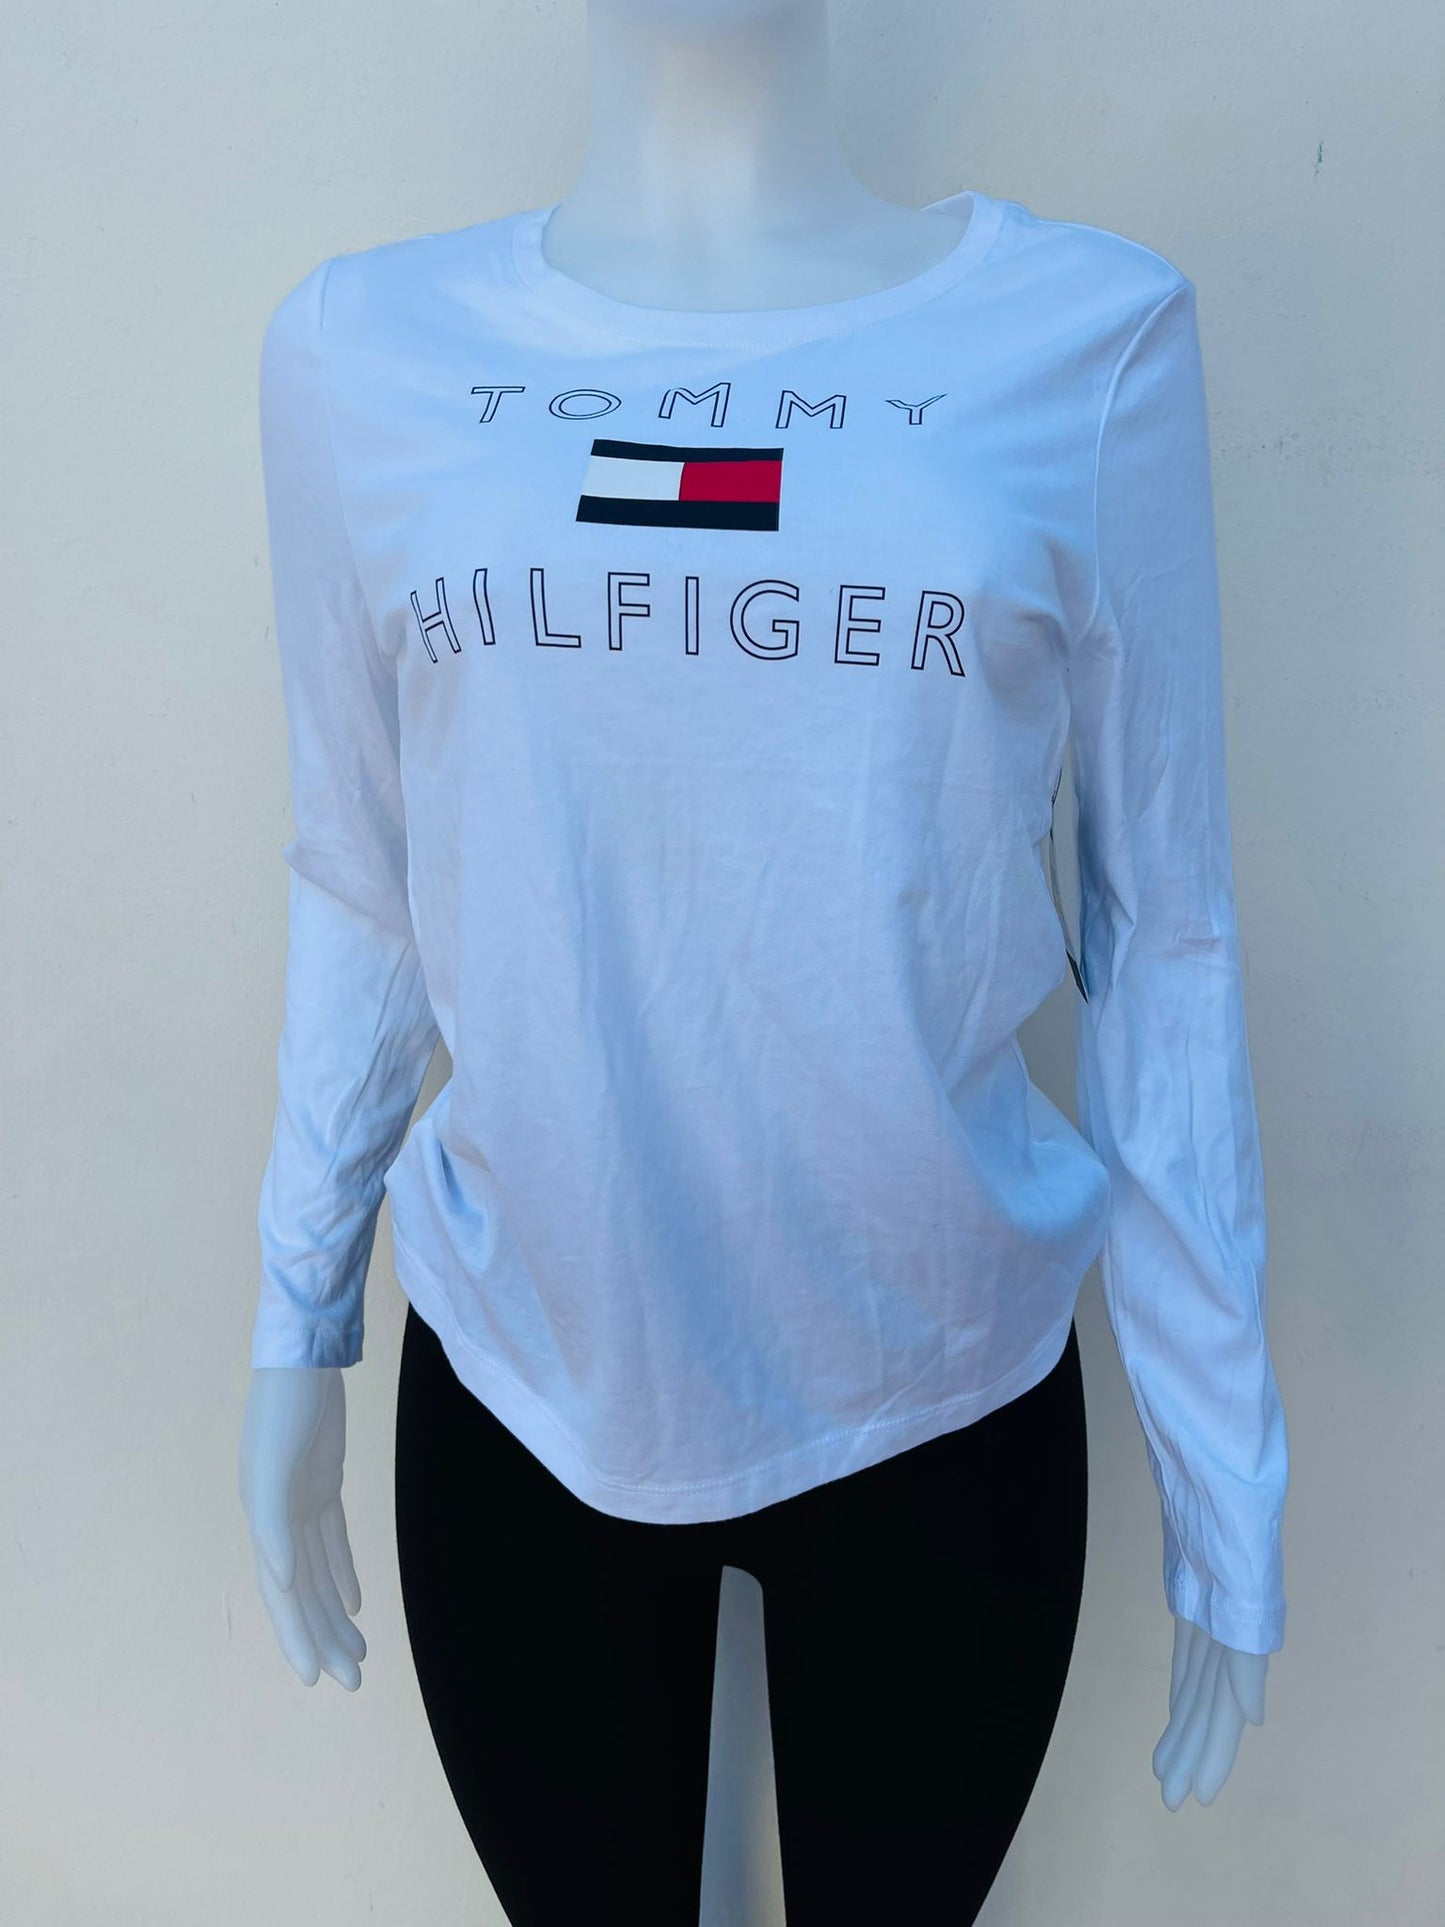 Suéter/ Abrigo Tommy Hilfiger original, blanco con letras TOMMY HILFIGER y logotipo de la marca en el centro, manga larga.